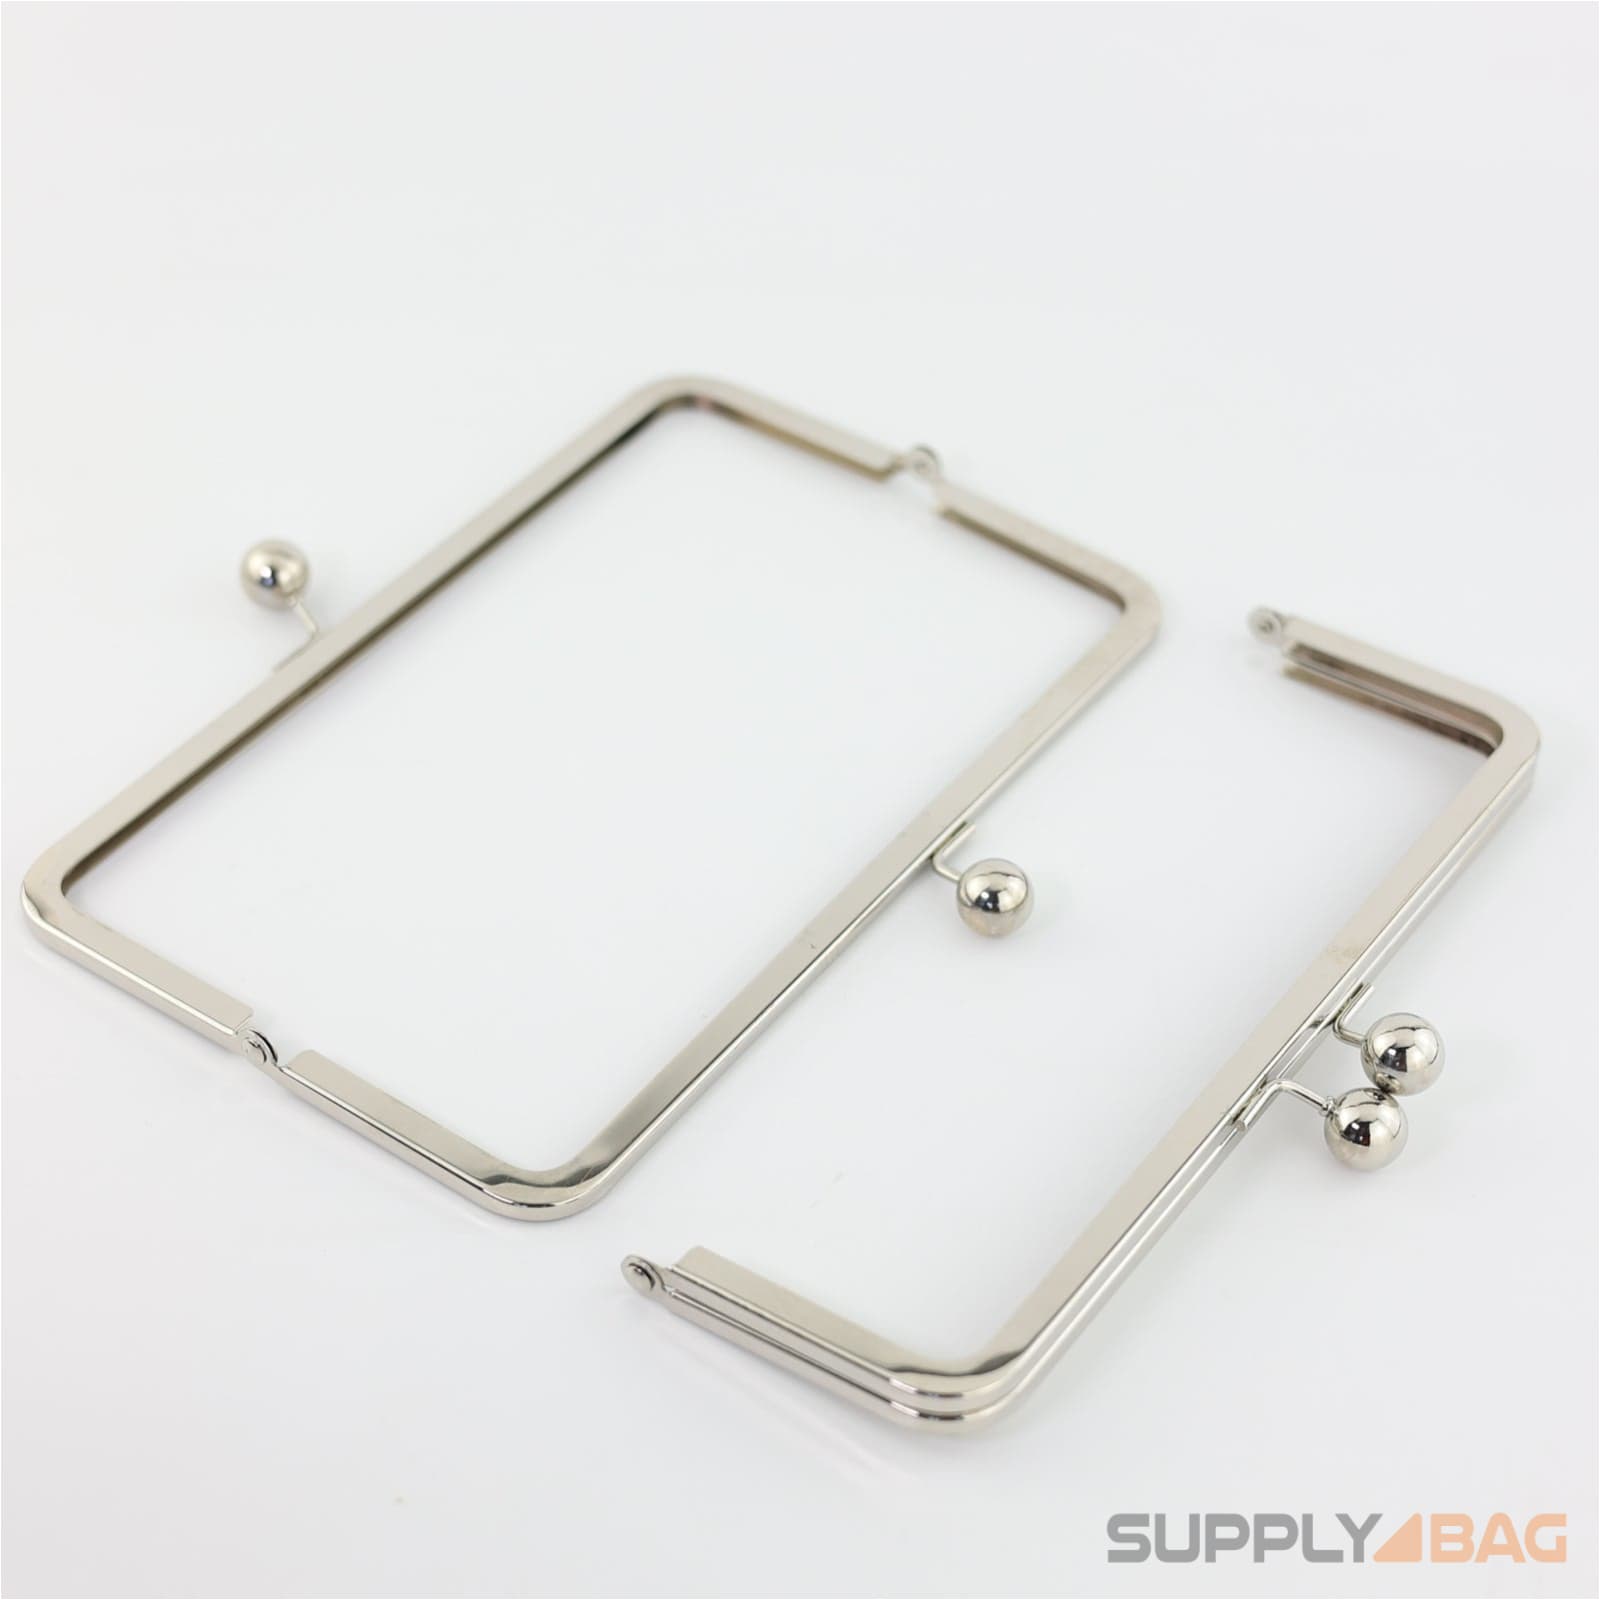 9 x 3 inch - kisslock ball clasp - silver metal purse frame